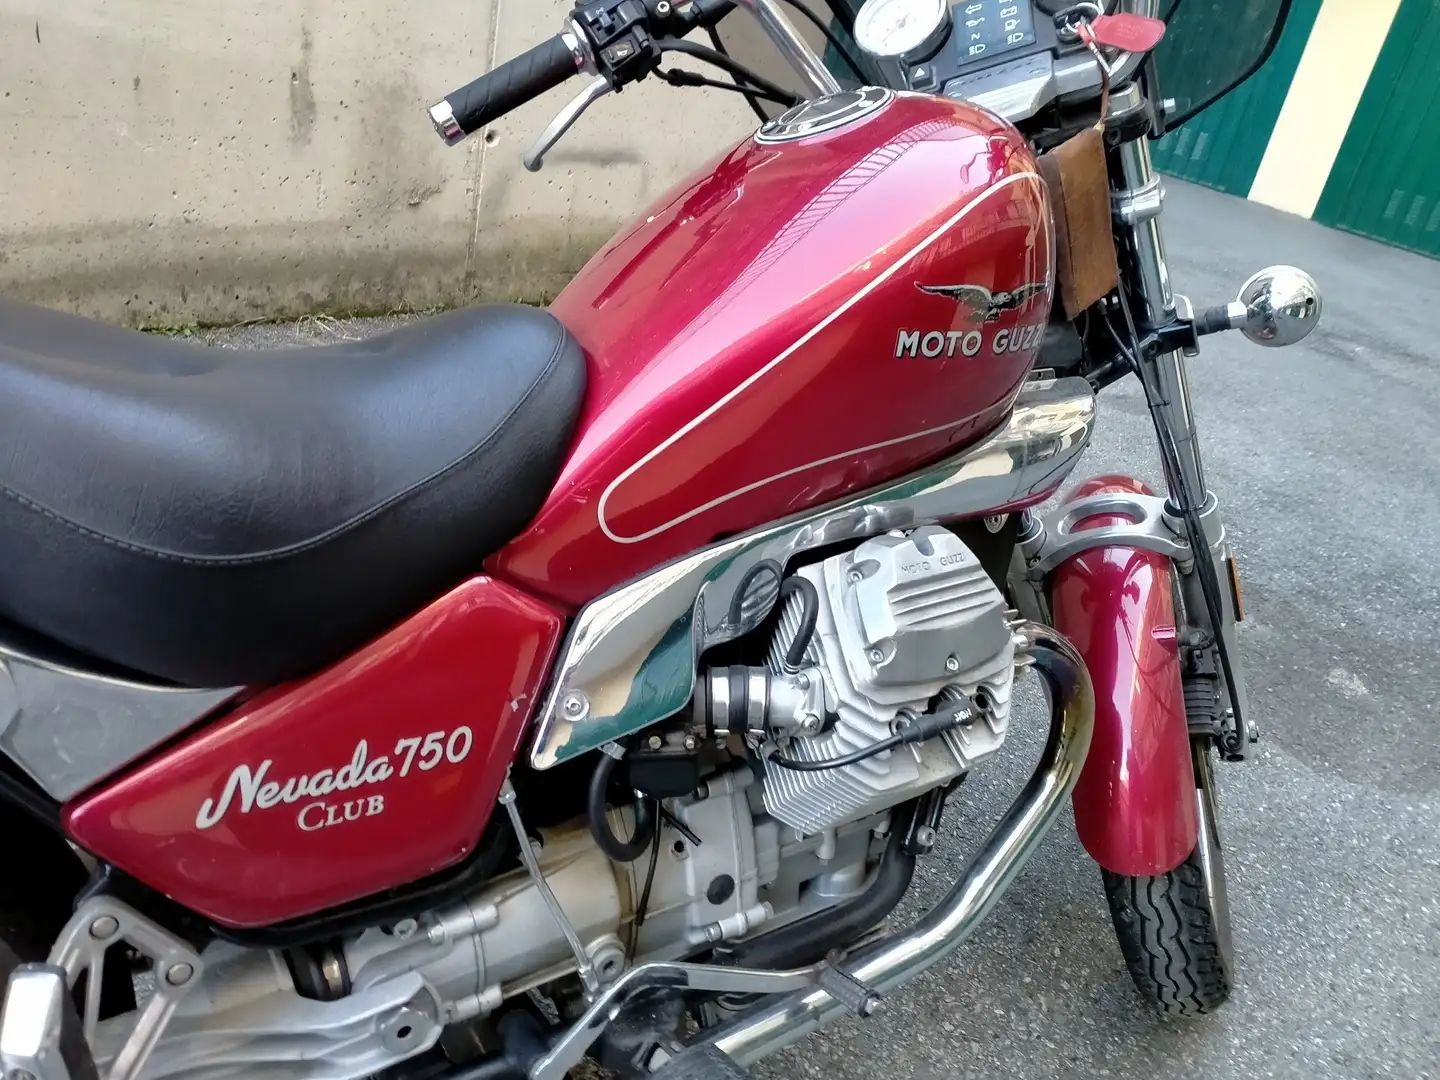 Moto Guzzi Nevada club Rood - 1